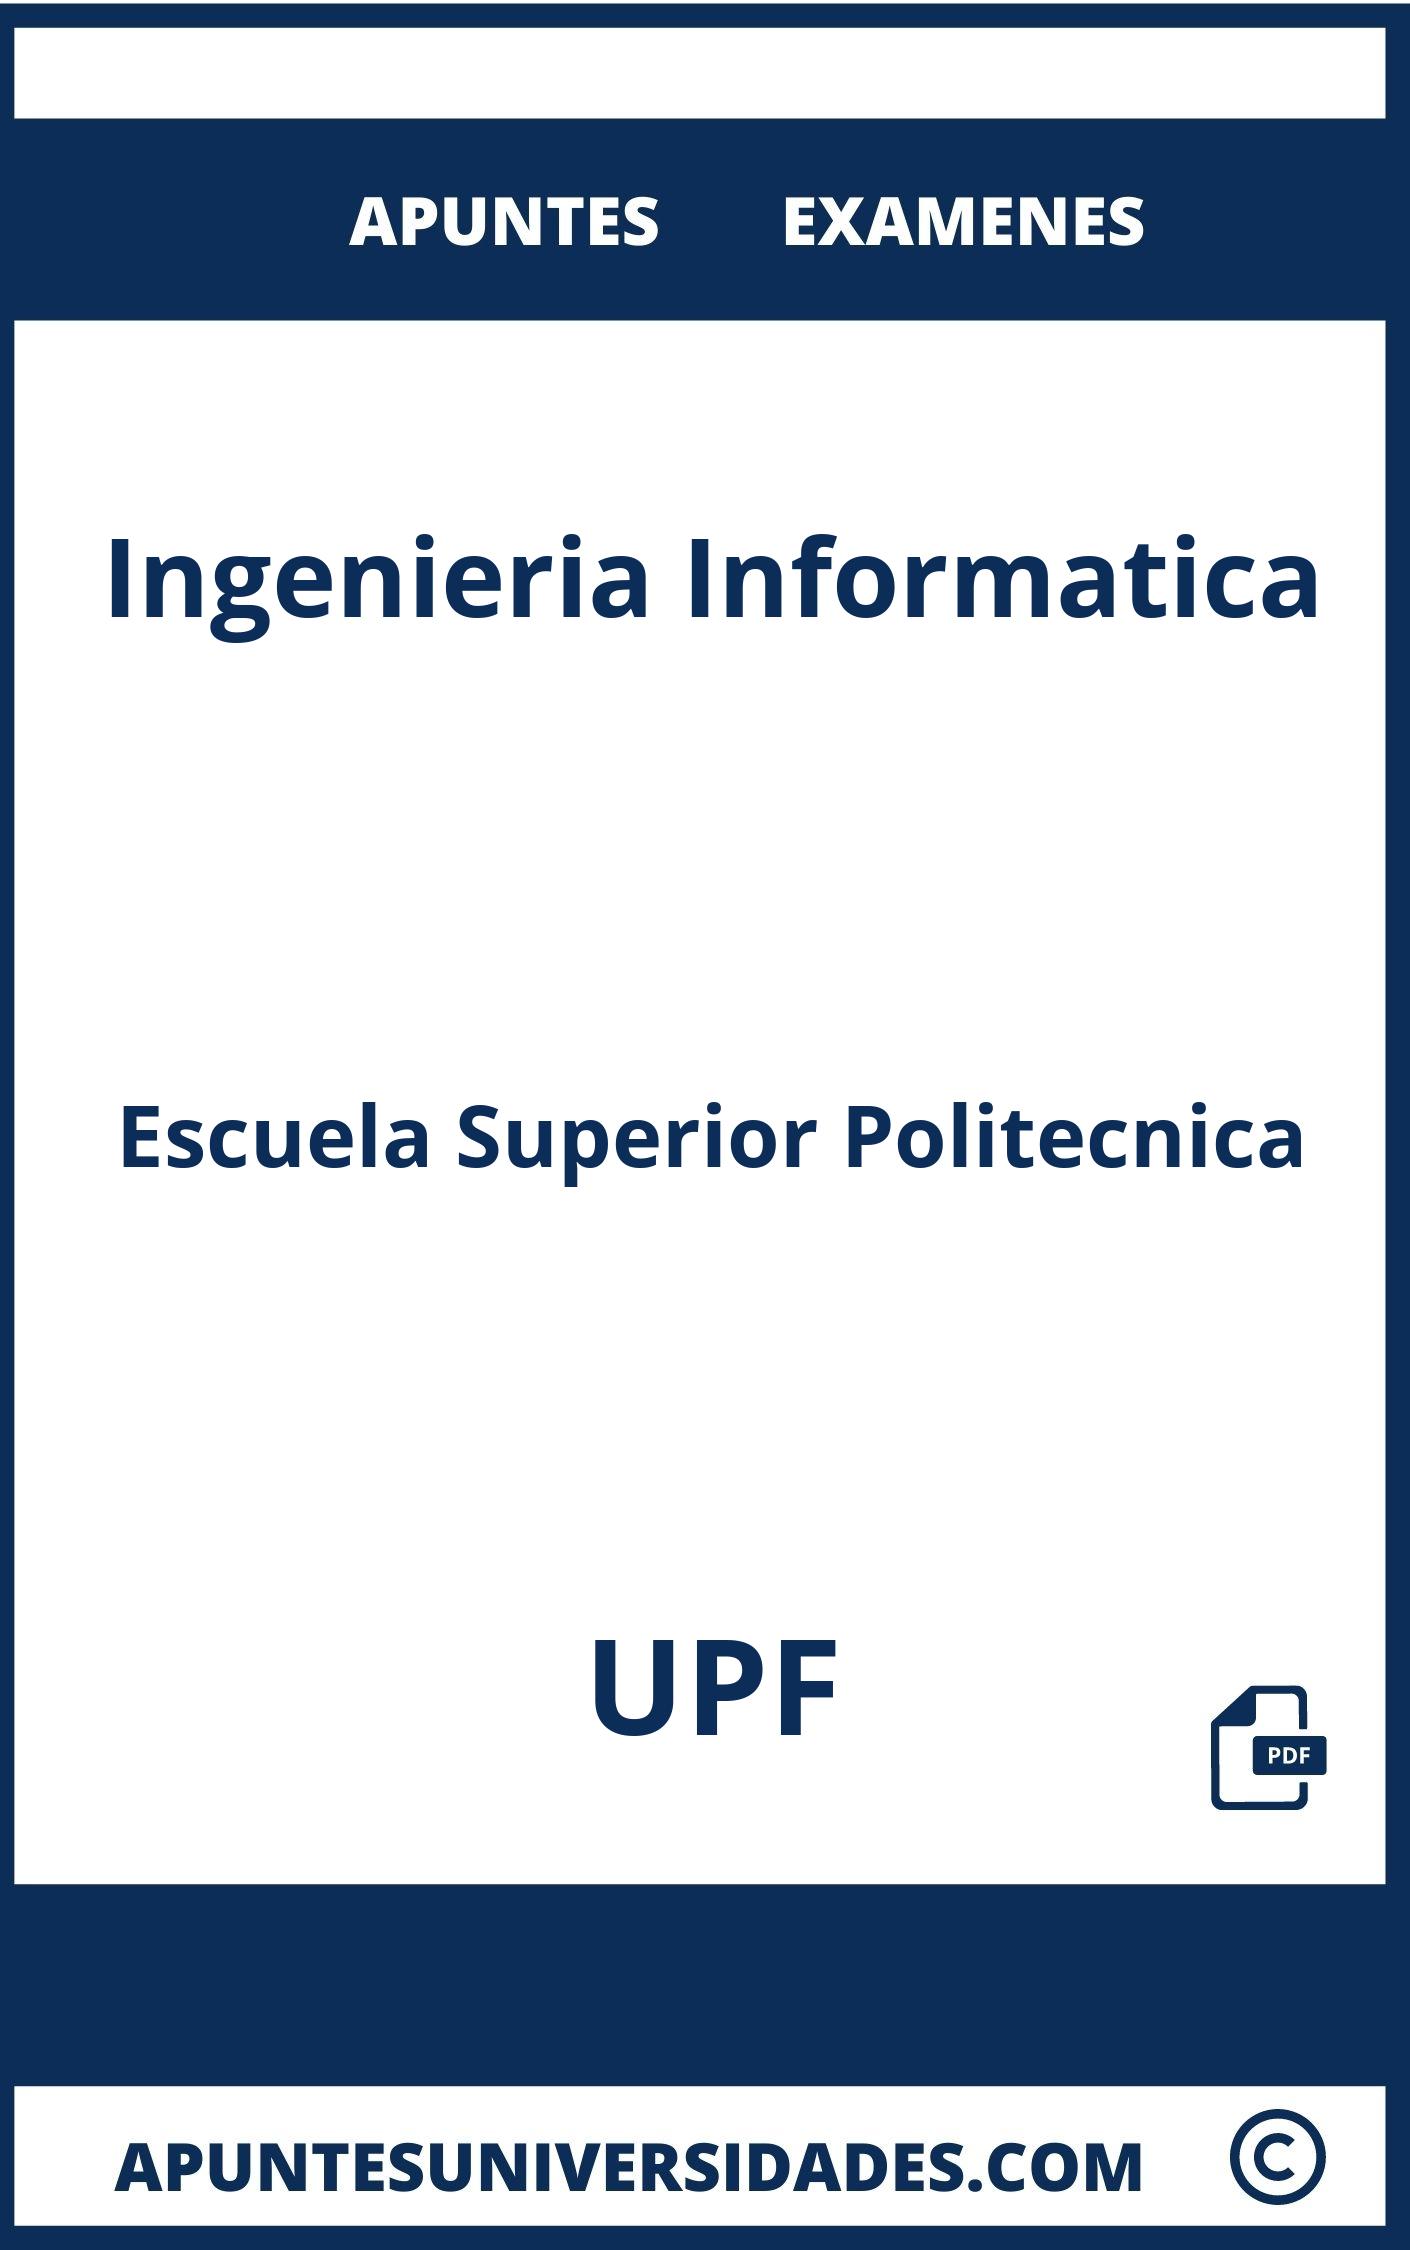 Apuntes Ingenieria Informatica UPF y Examenes